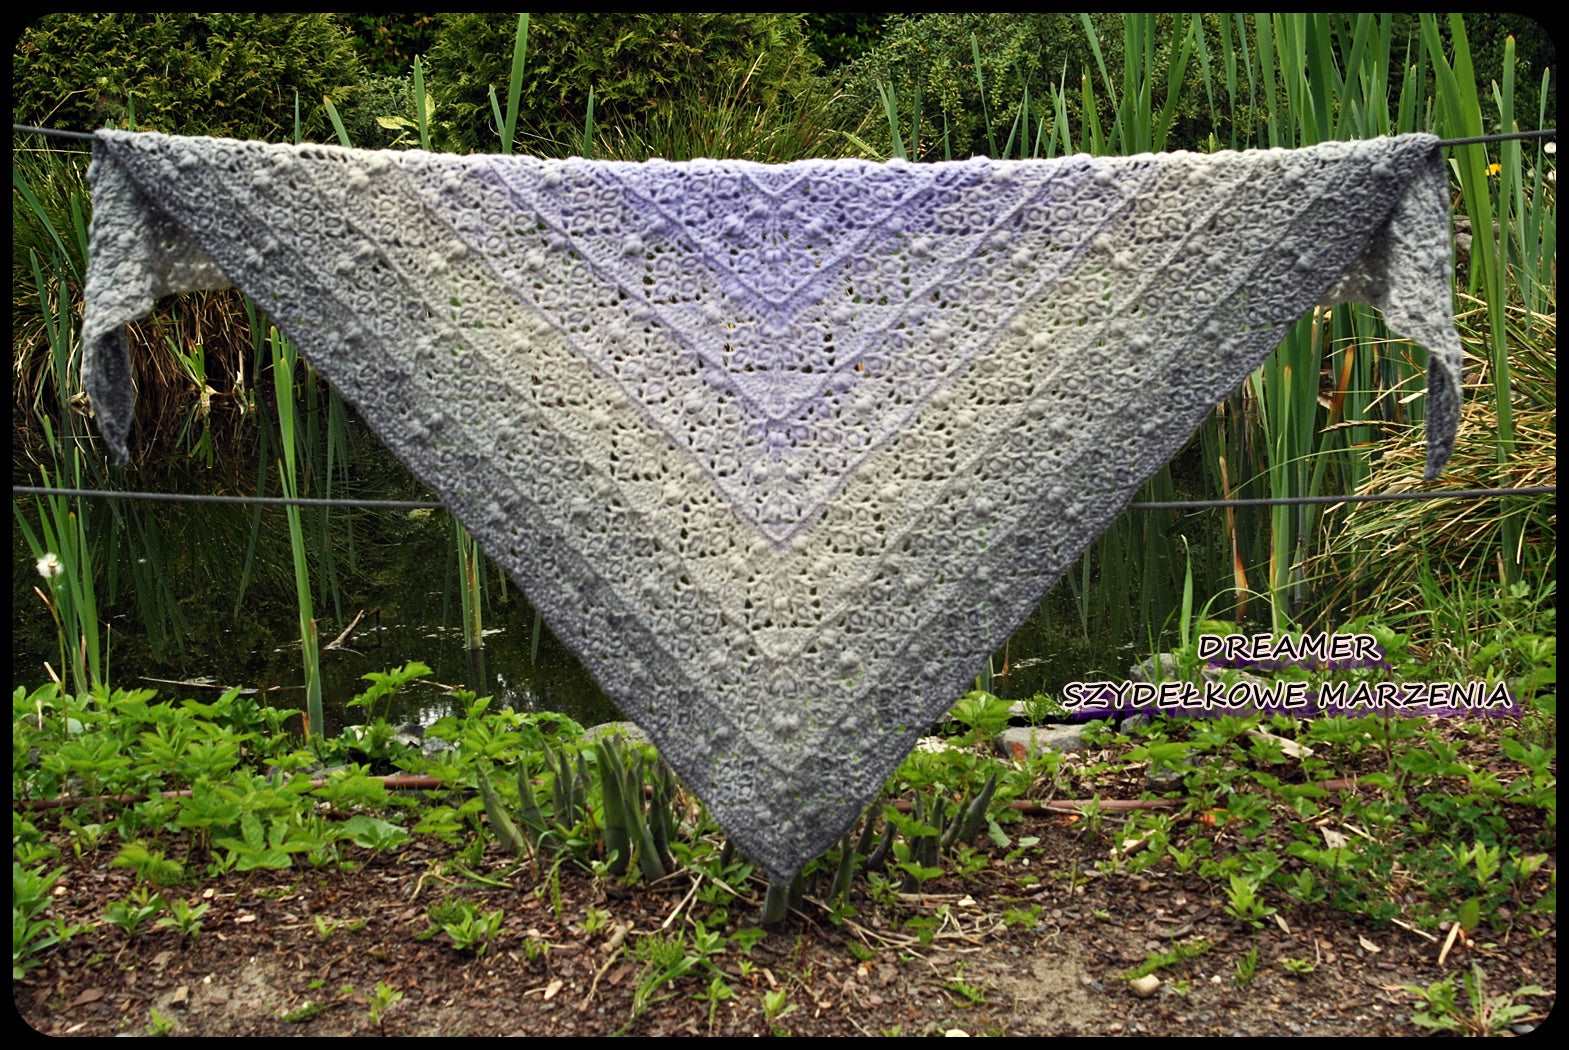 Silento shawl pattern by Dreamer- Szydełkowe Marzenia